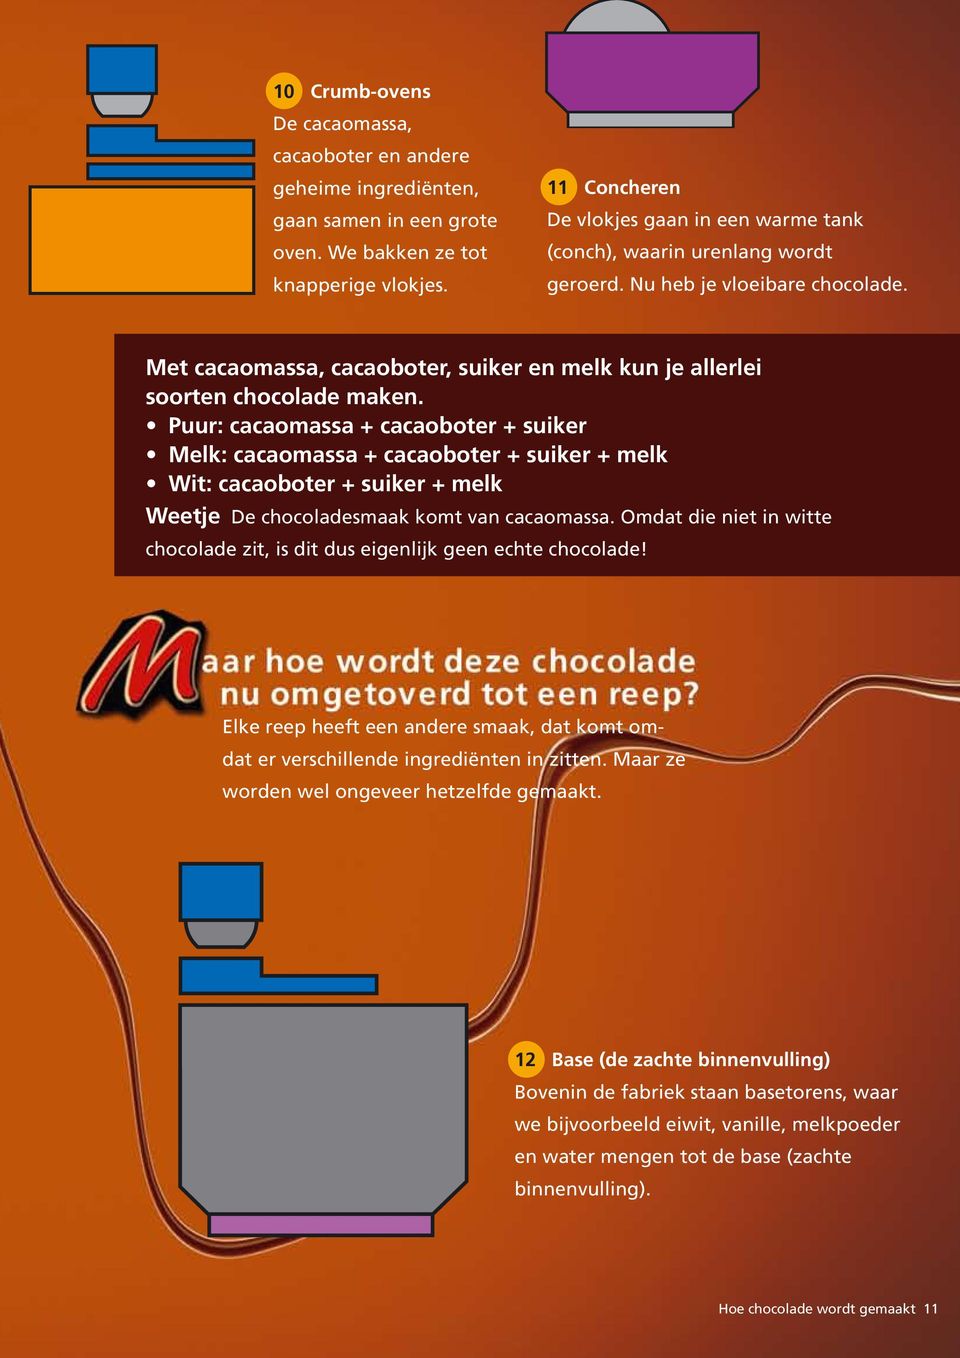 Met cacaomassa, cacaoboter, suiker en melk kun je allerlei soorten chocolade maken.